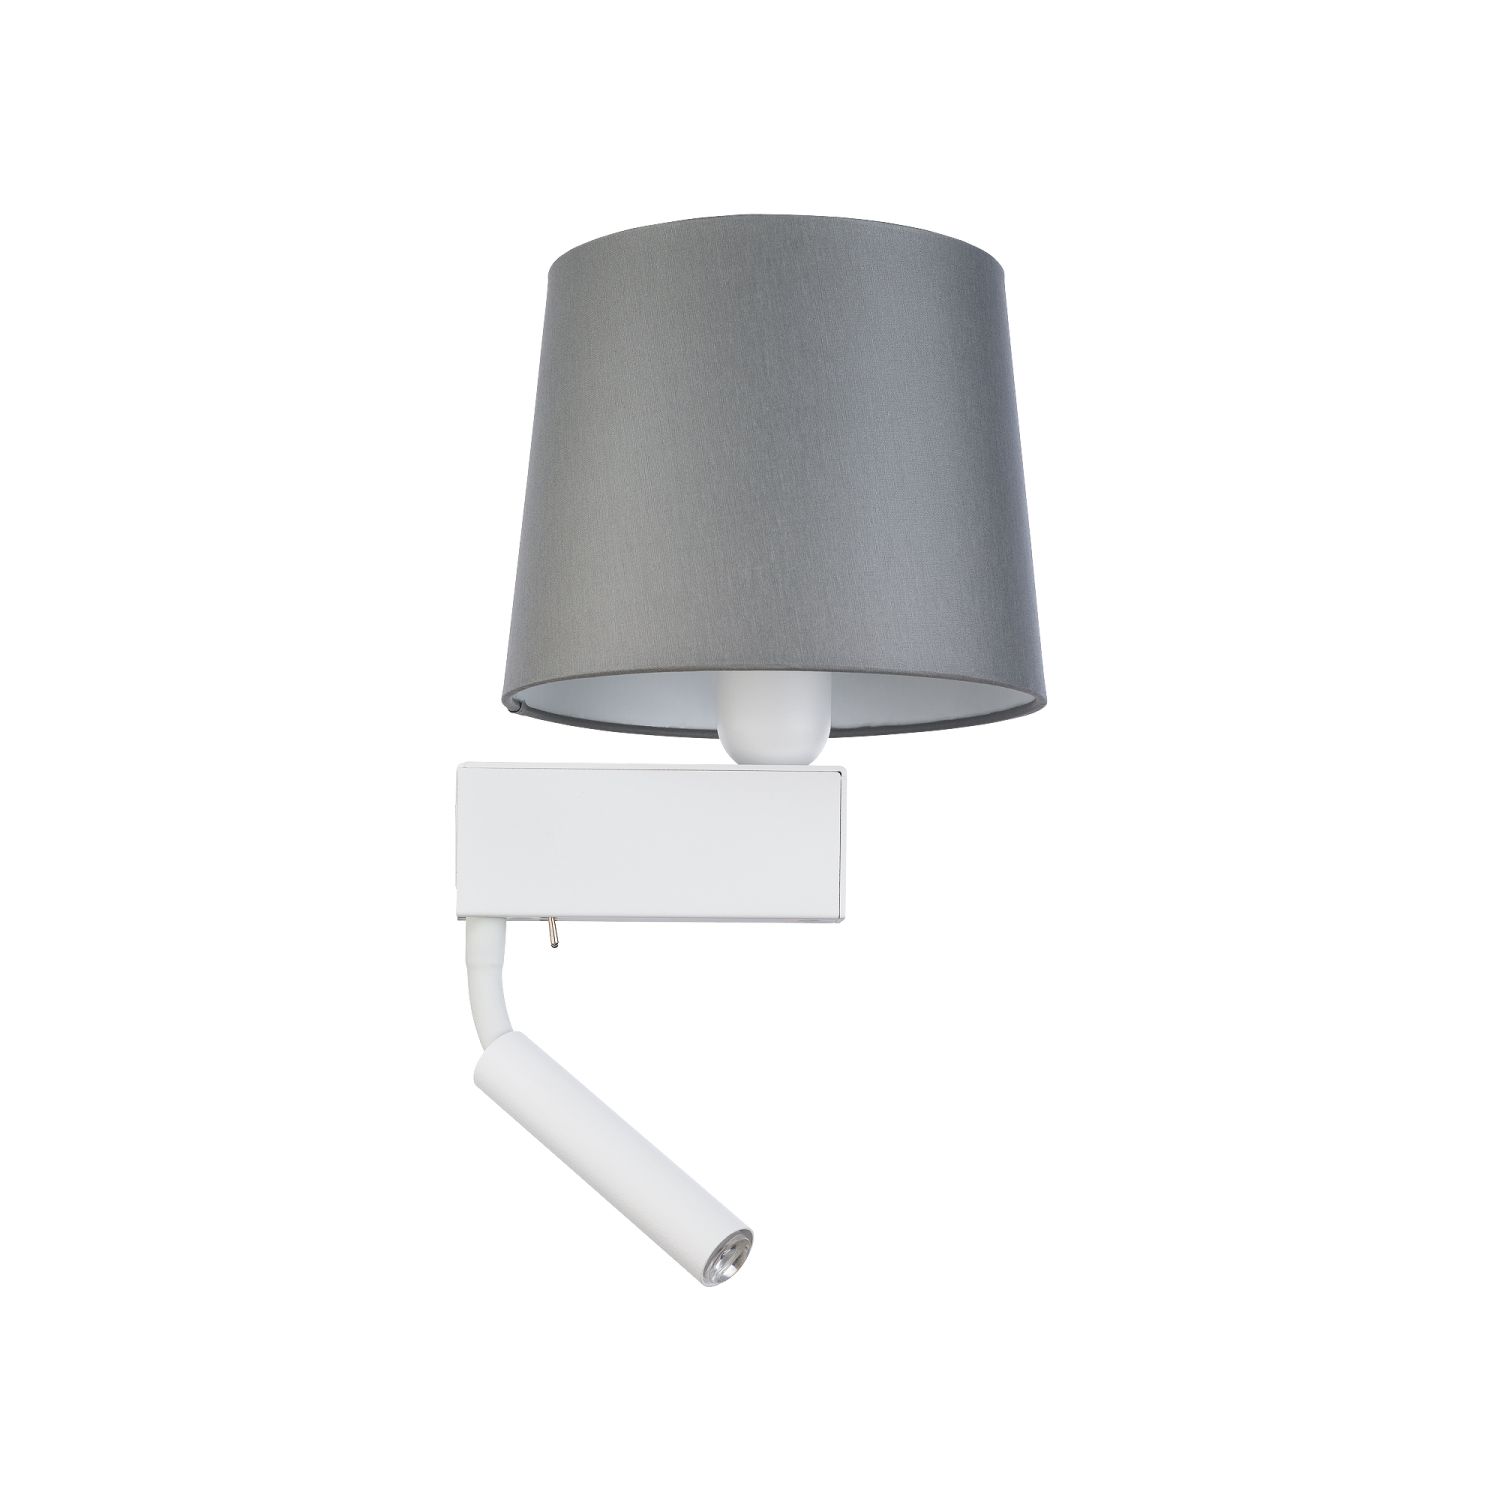 Wohnliche Wandlampe Grau Weiß mit Leselampe E27 + G9